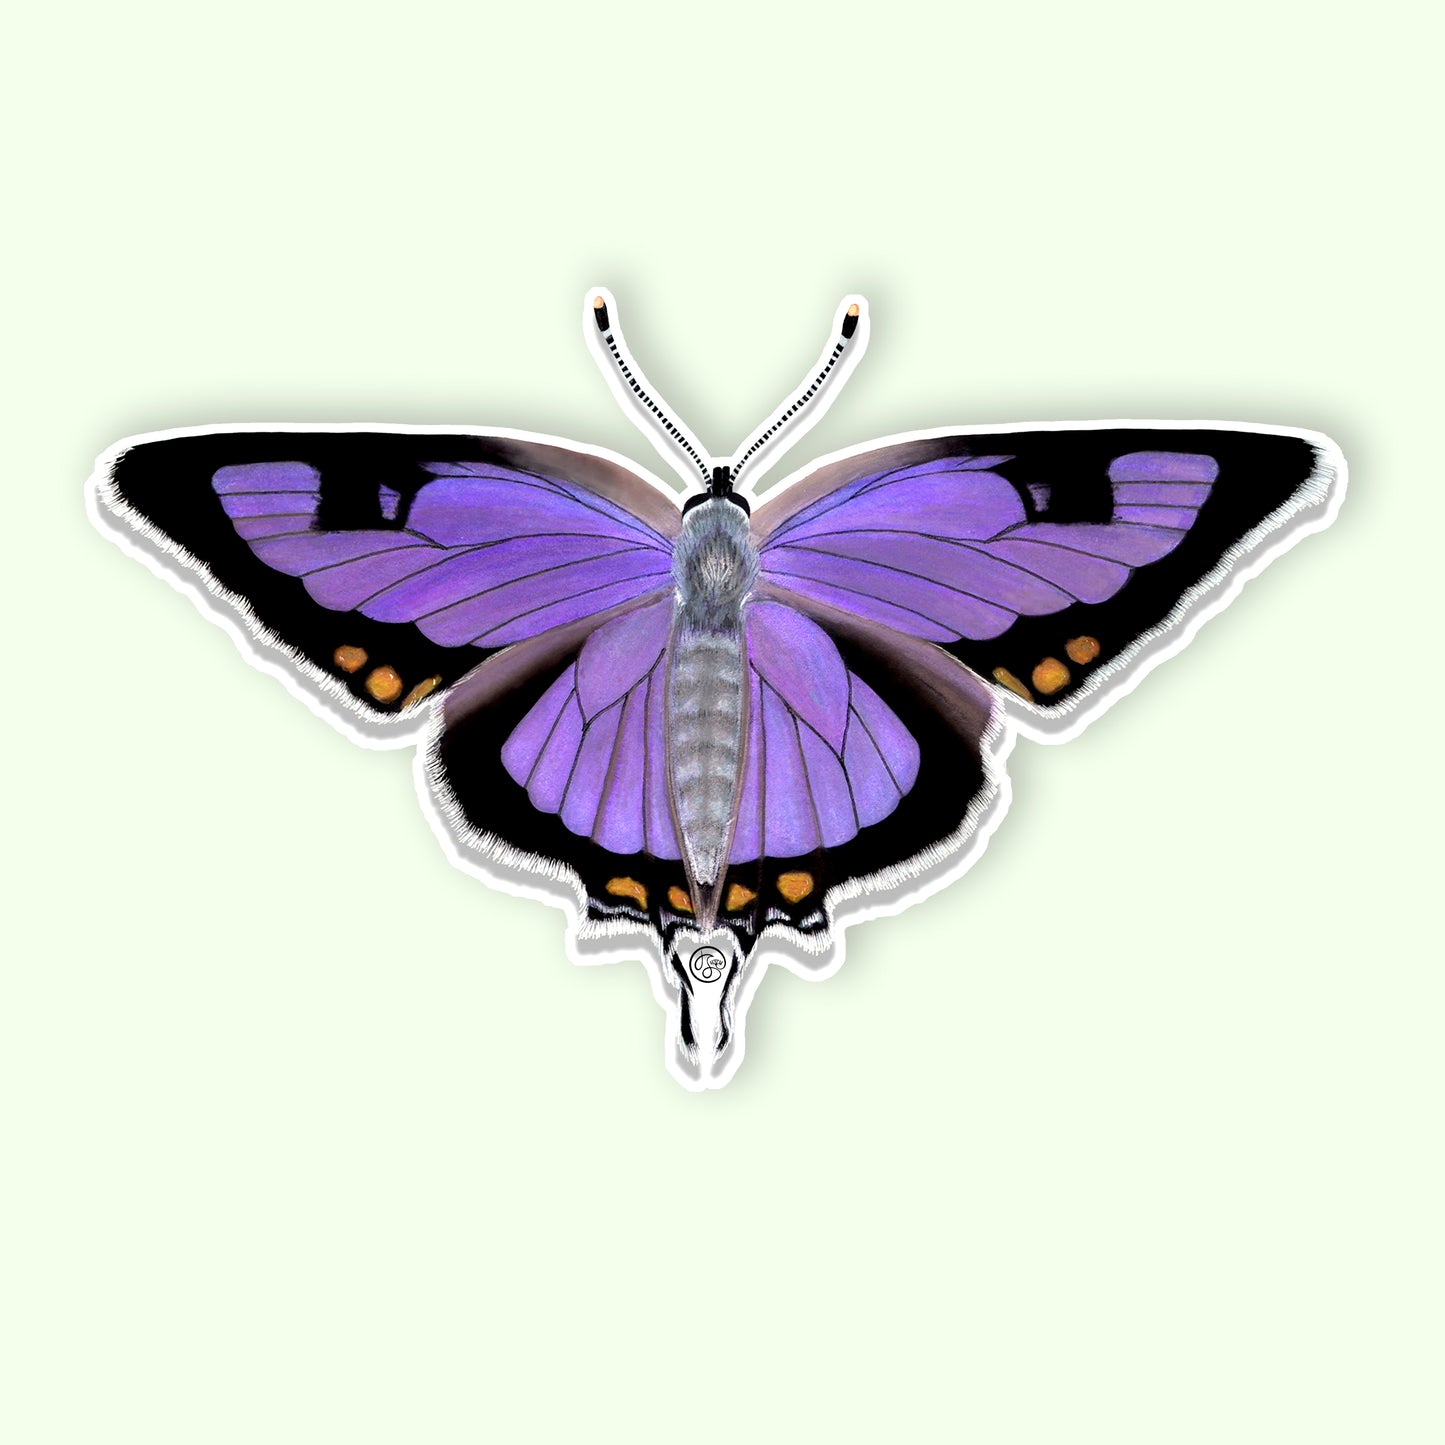 Hairstreak Butterfly Sticker